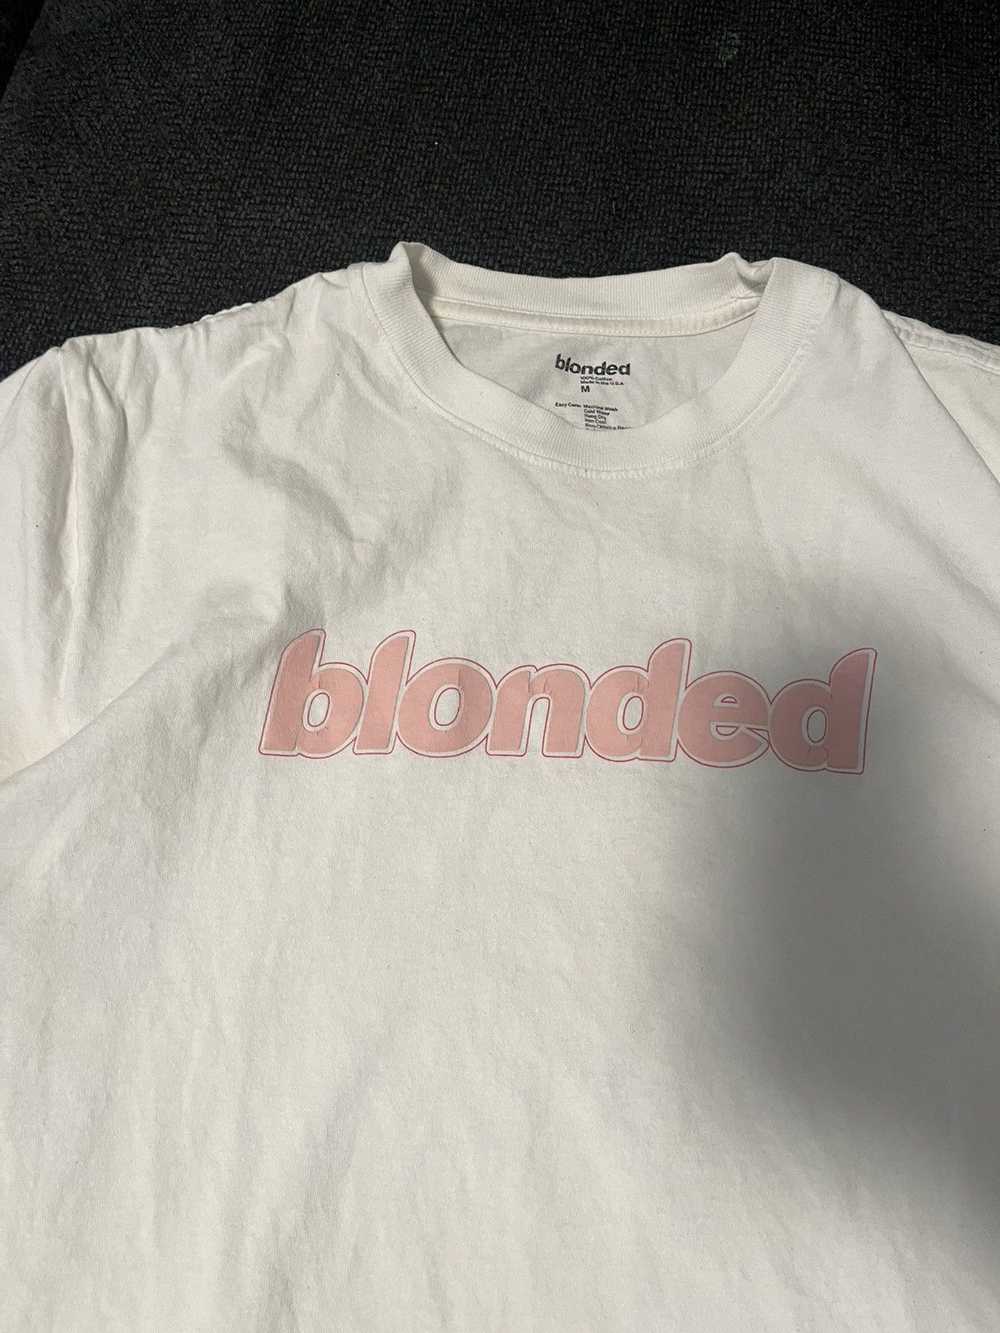 Frank Ocean Blonded tshirt - image 4